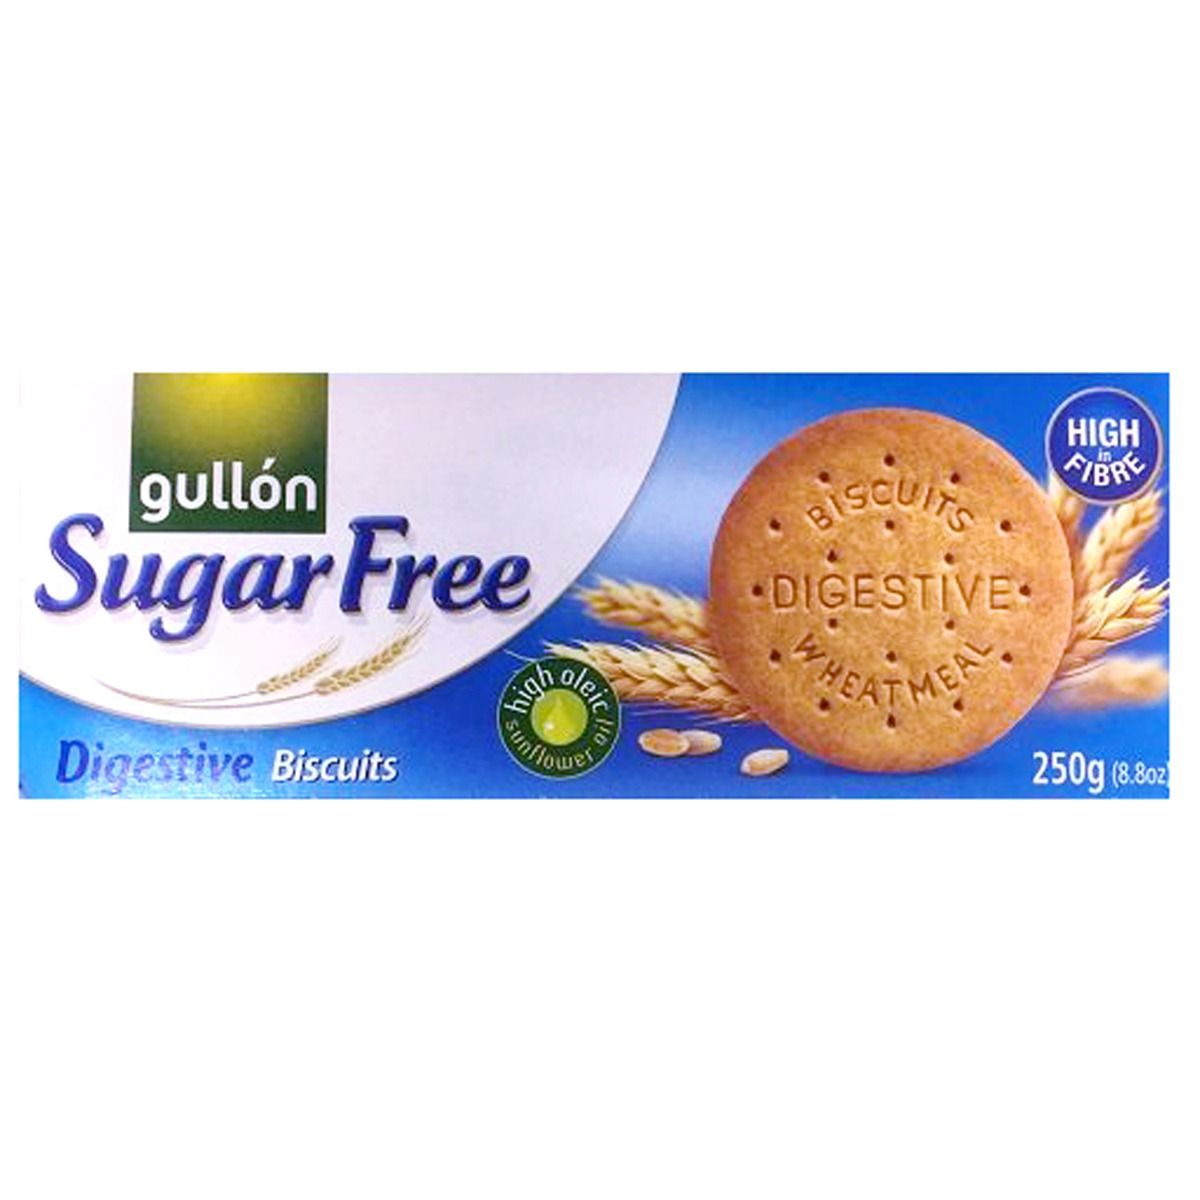 Buy Gullón Digestive Biscuits Sugar Free 250g Online